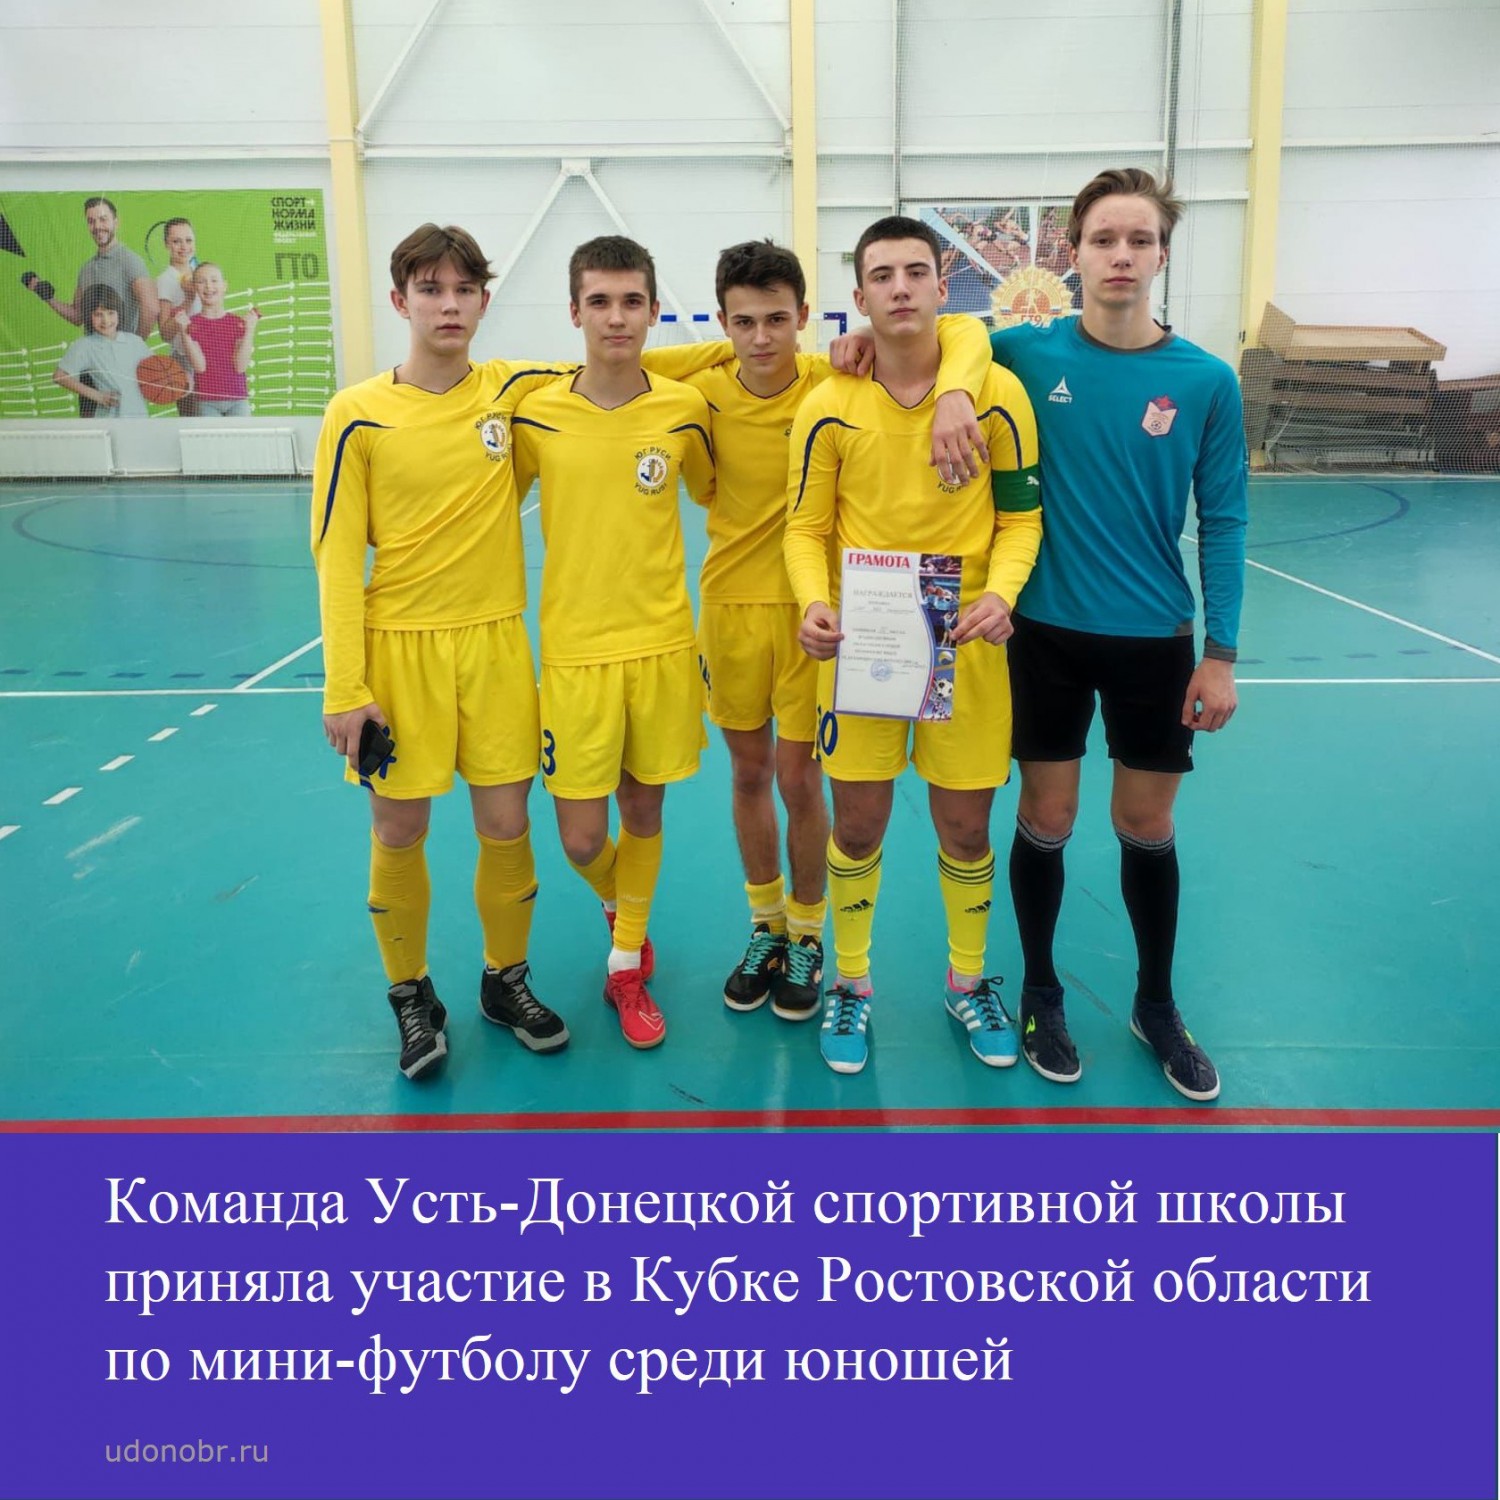 Команда Усть-Донецкой спортивной школы приняла участие в Кубке Ростовской области по мини-футболу среди юношей